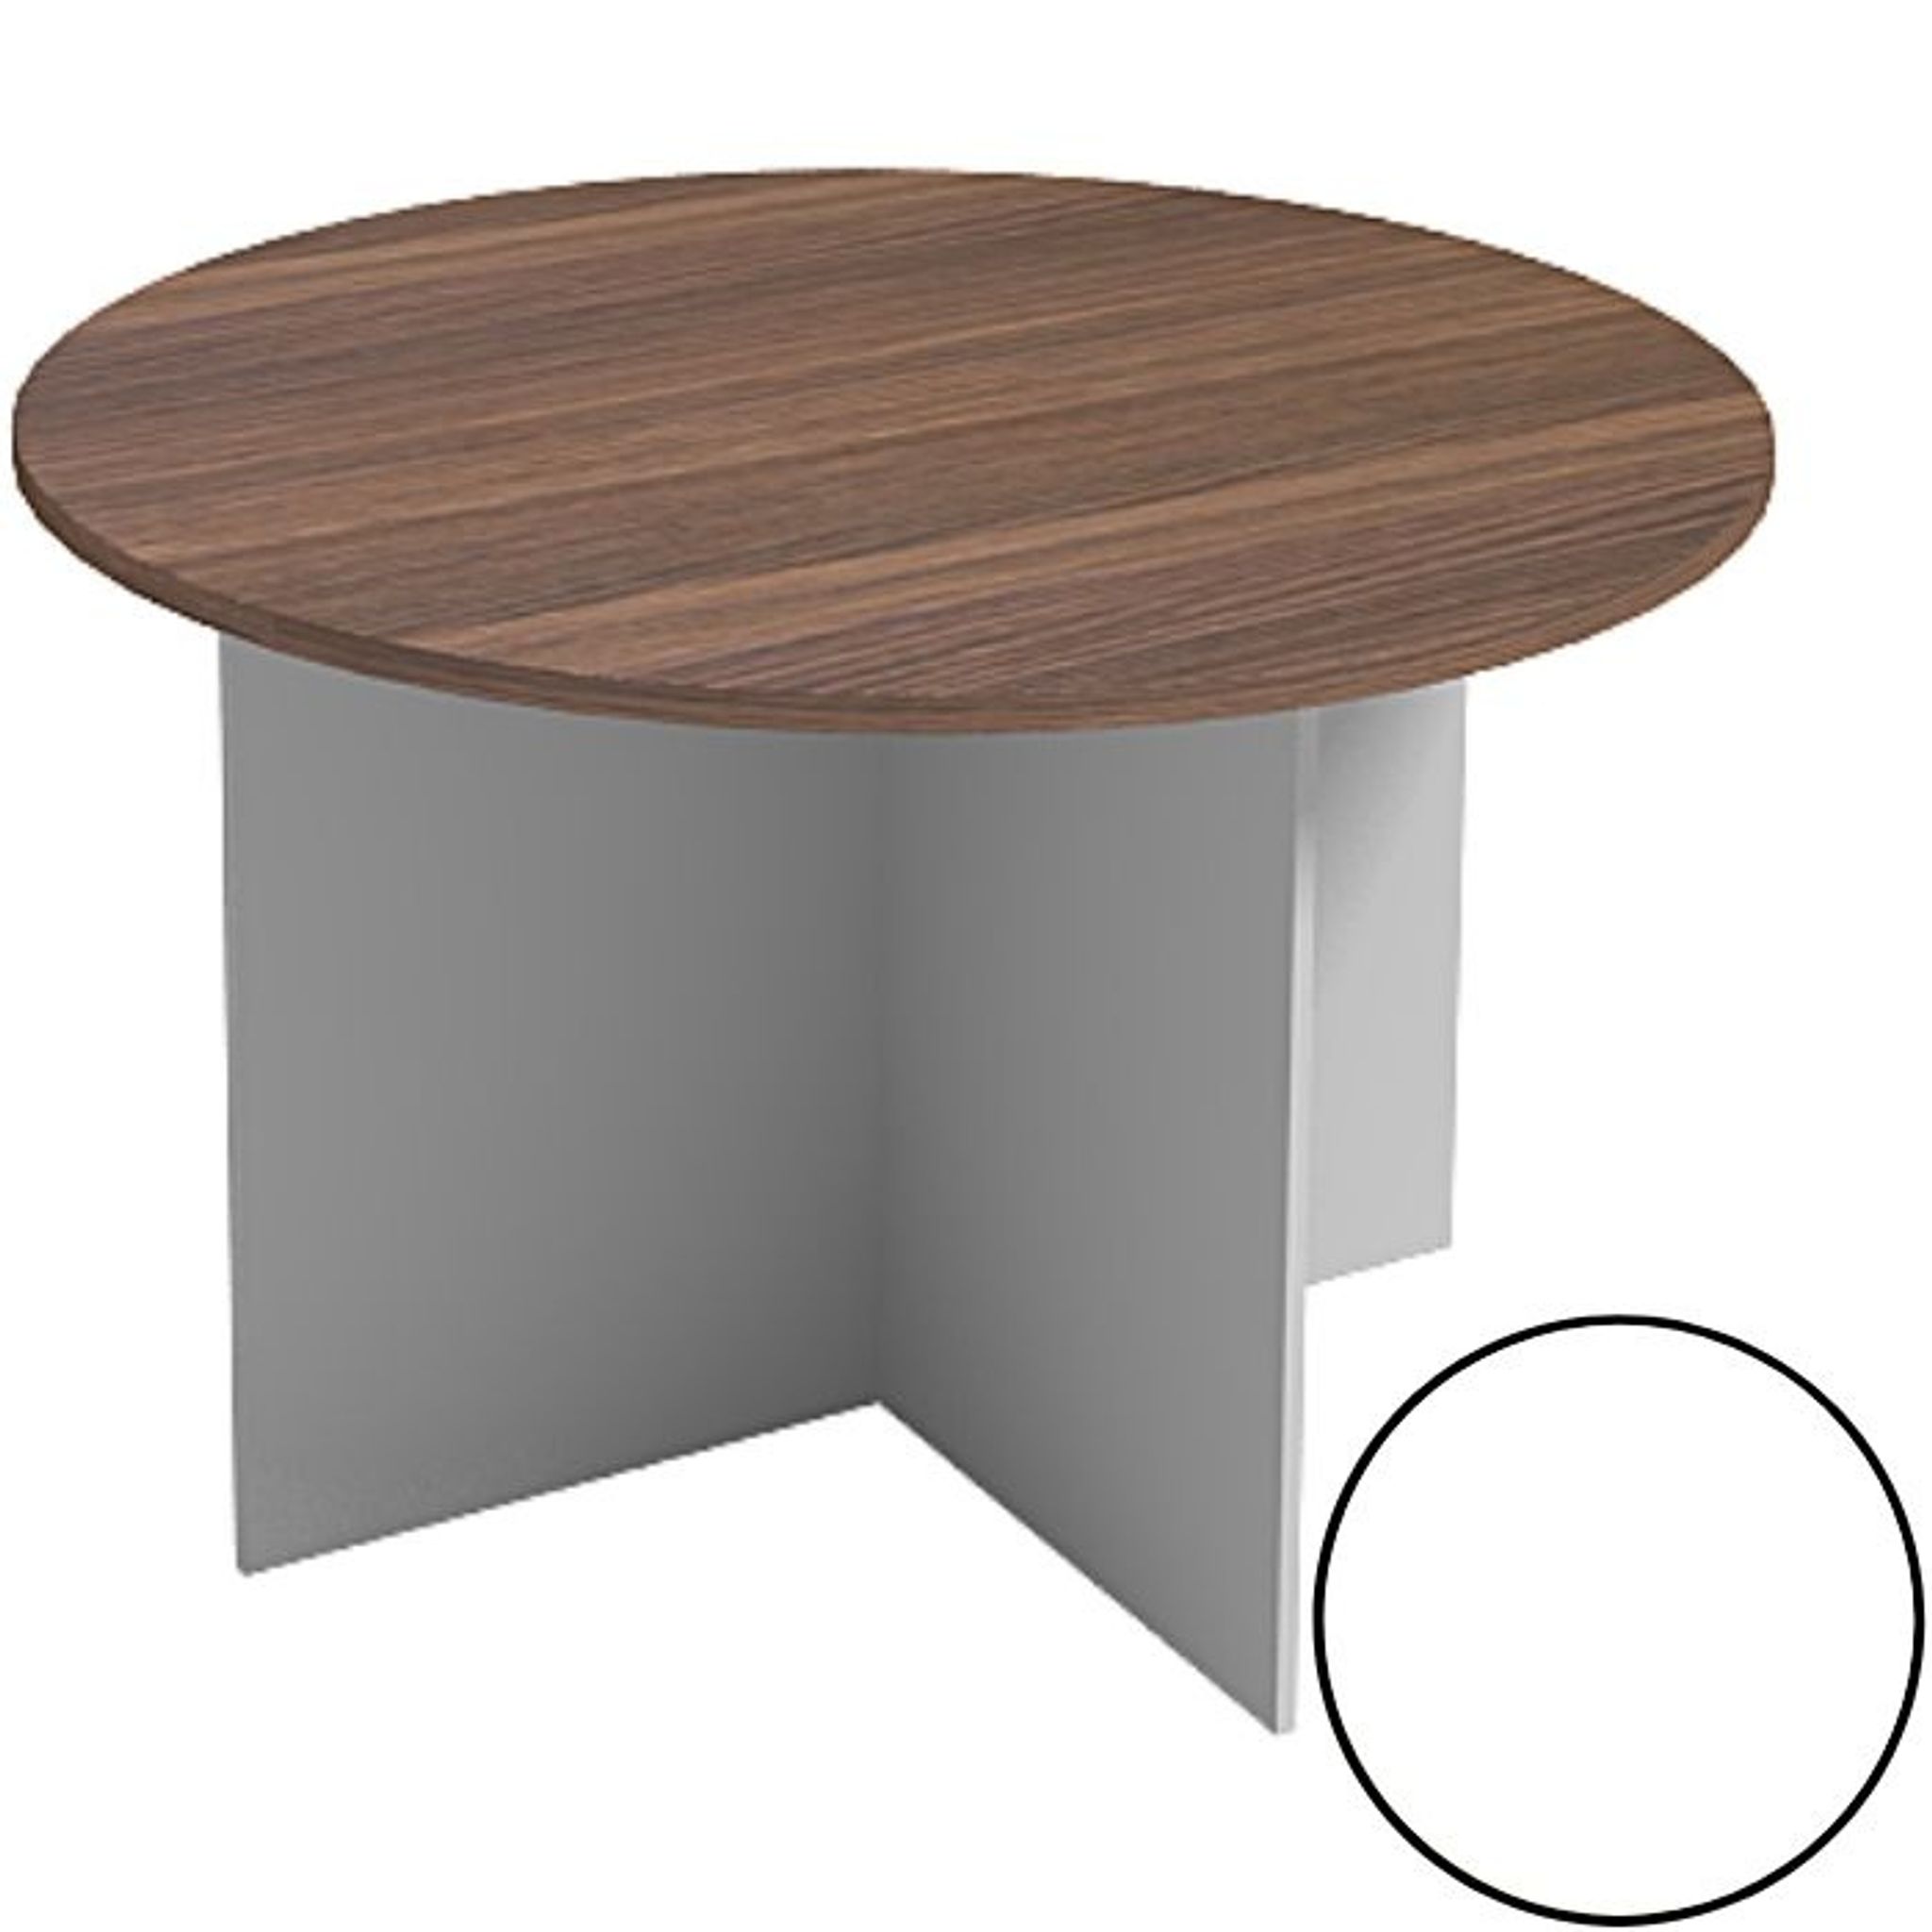 Jednací stůl s kulatou deskou PRIMO WHITE, průměr 1200 mm, bílá